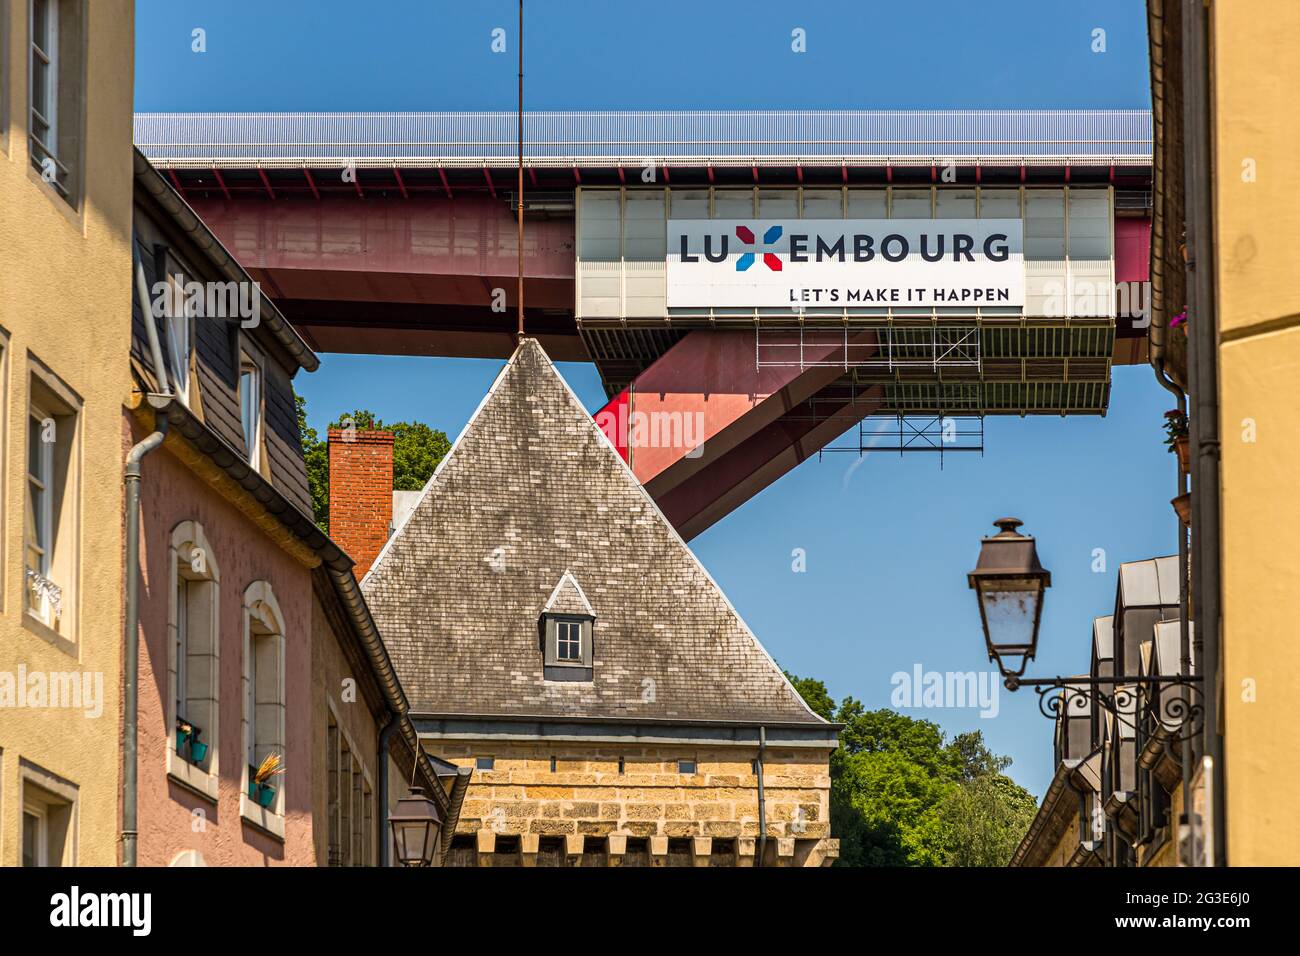 Werbebanner an der Großherzogin Charlotte Bridge: LUXEMBURG - LASST es UNS PASSIEREN Stockfoto